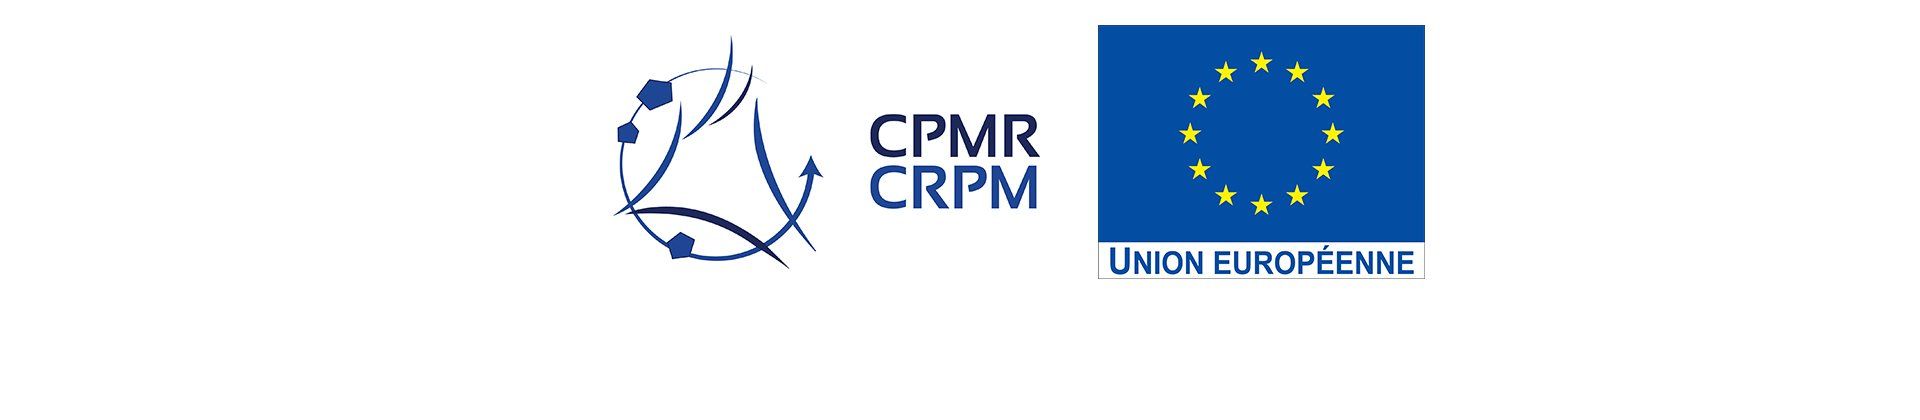 Bannière avec logo CRPM